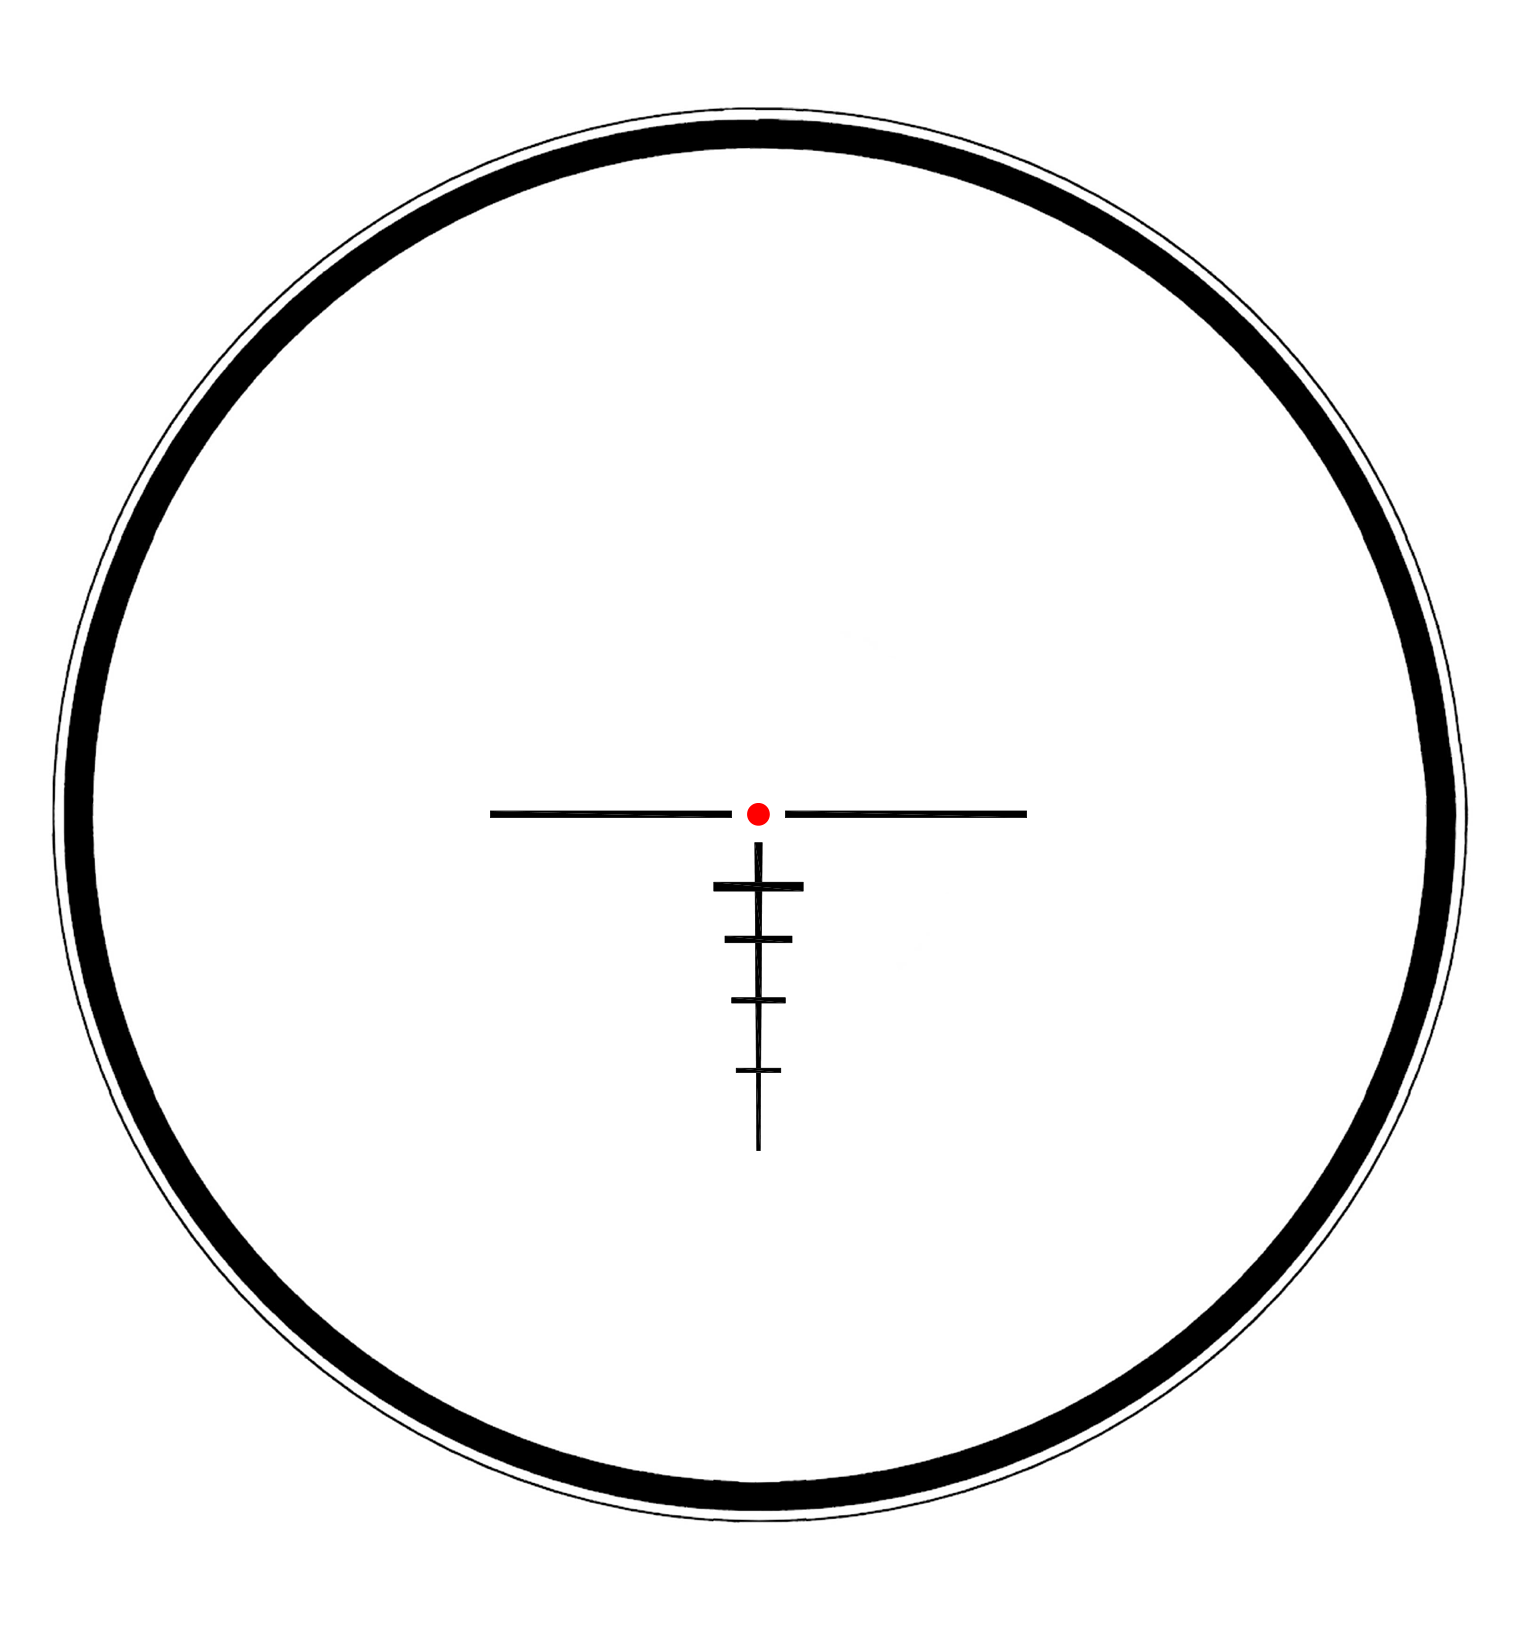 Наводка прицела. Steiner s432. Перекрестие оптического прицела. Сетка circle Dot Leupold.